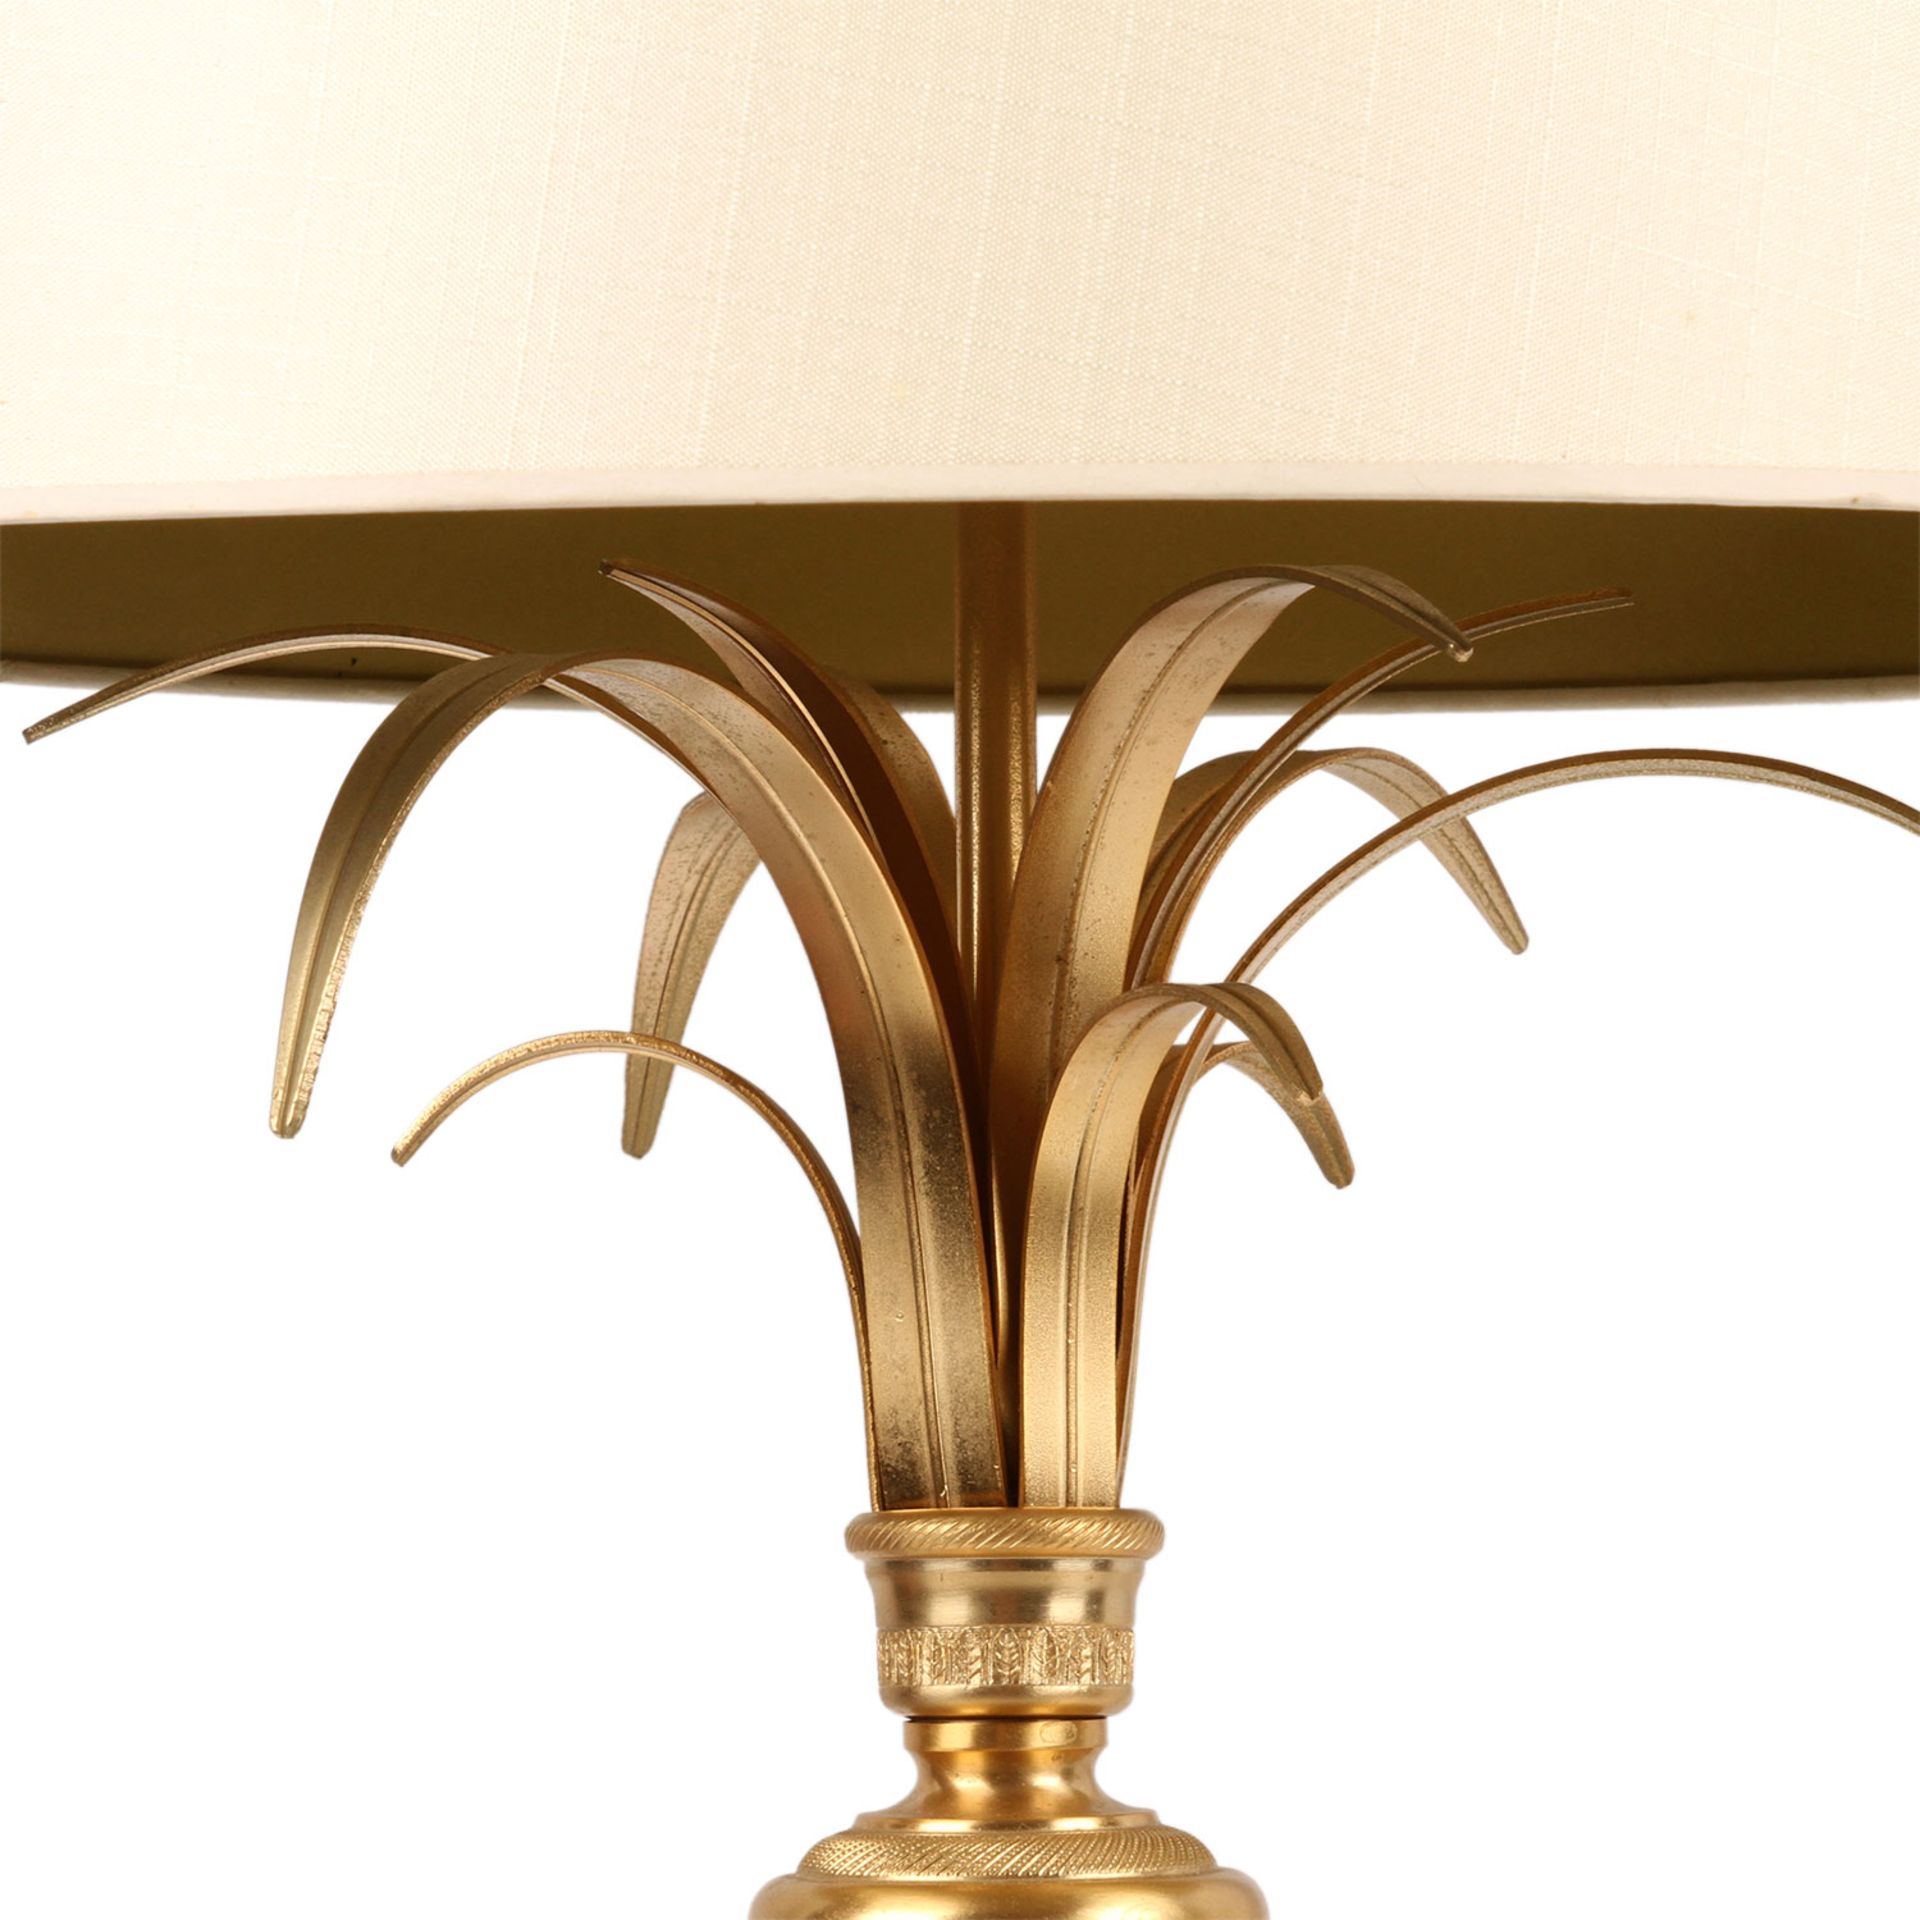 TISCHLAMPE / PALMENLAMPEDreiflammige Tischlampe aus Messingblech, florales Design in stilisierter - Image 4 of 5